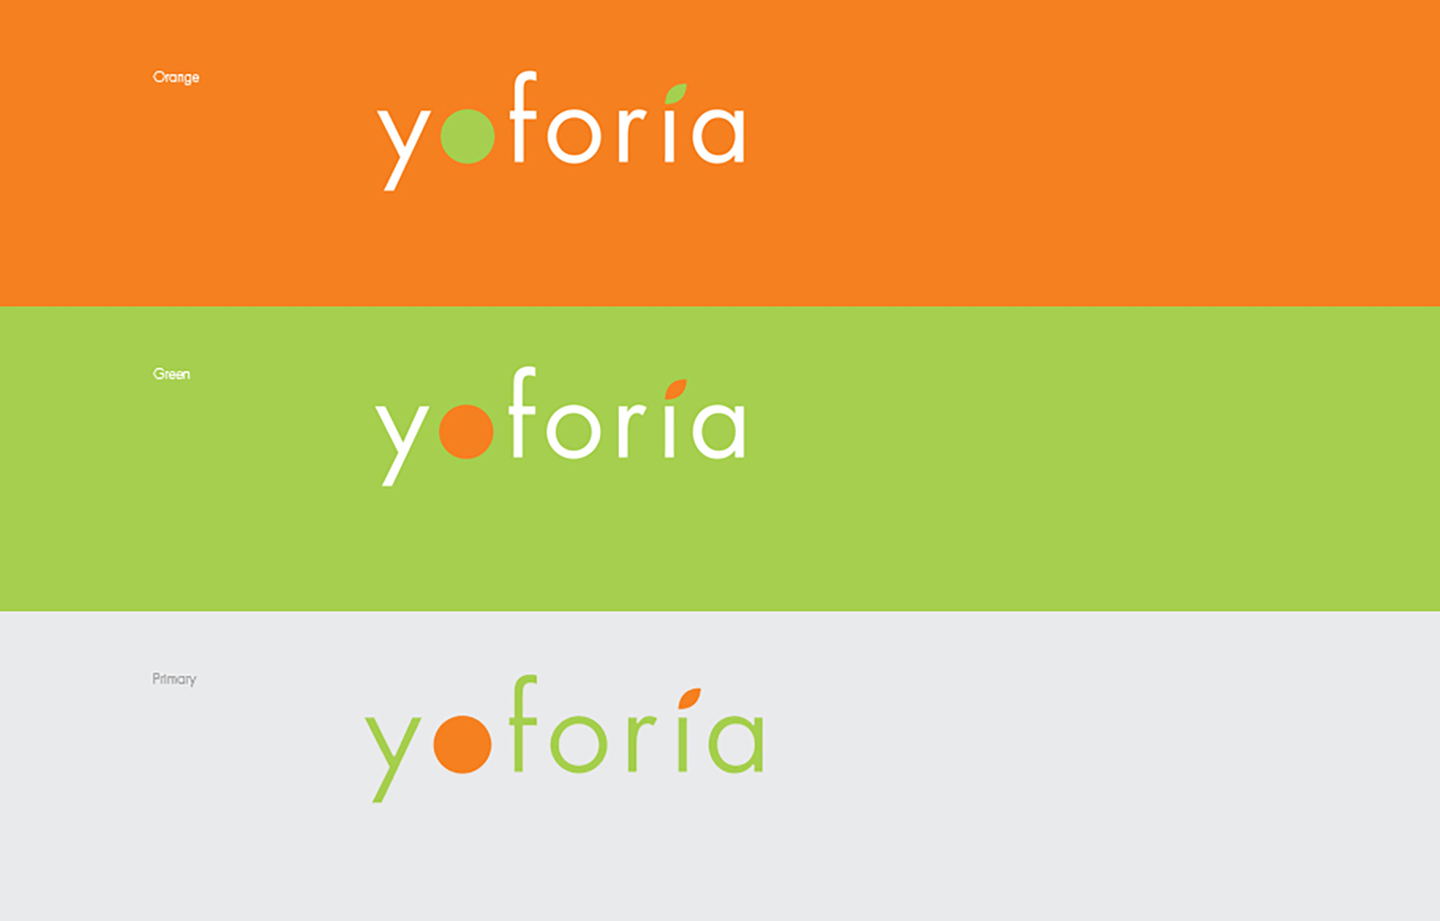 yoforia_detail1